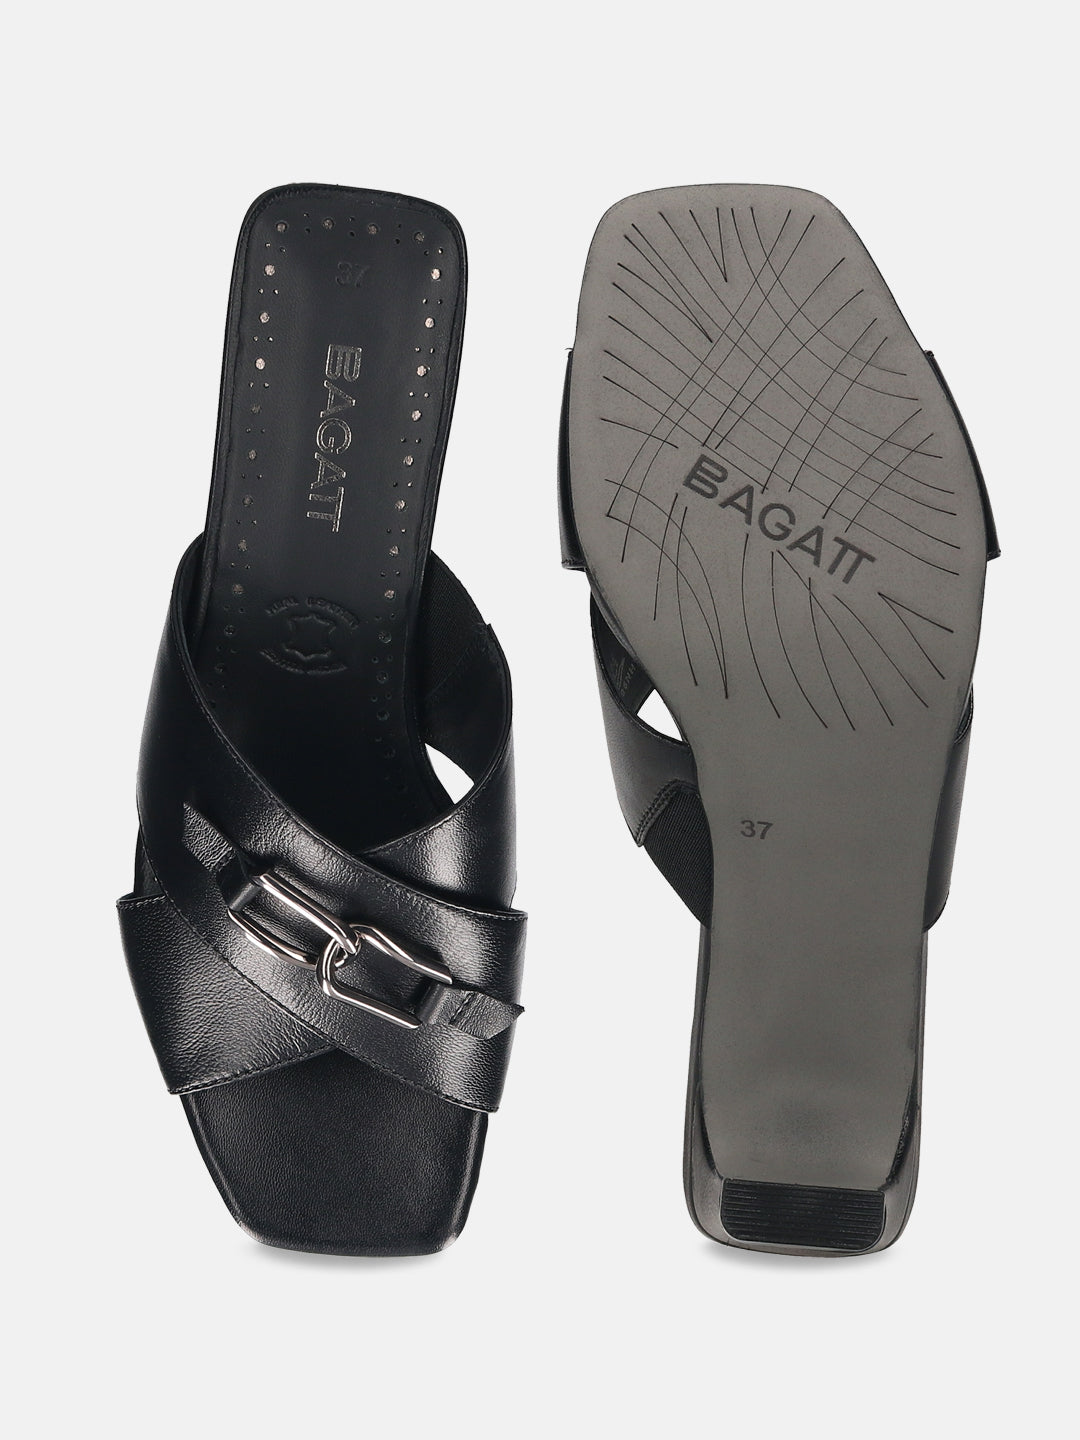 Jaya Black Leather Heels